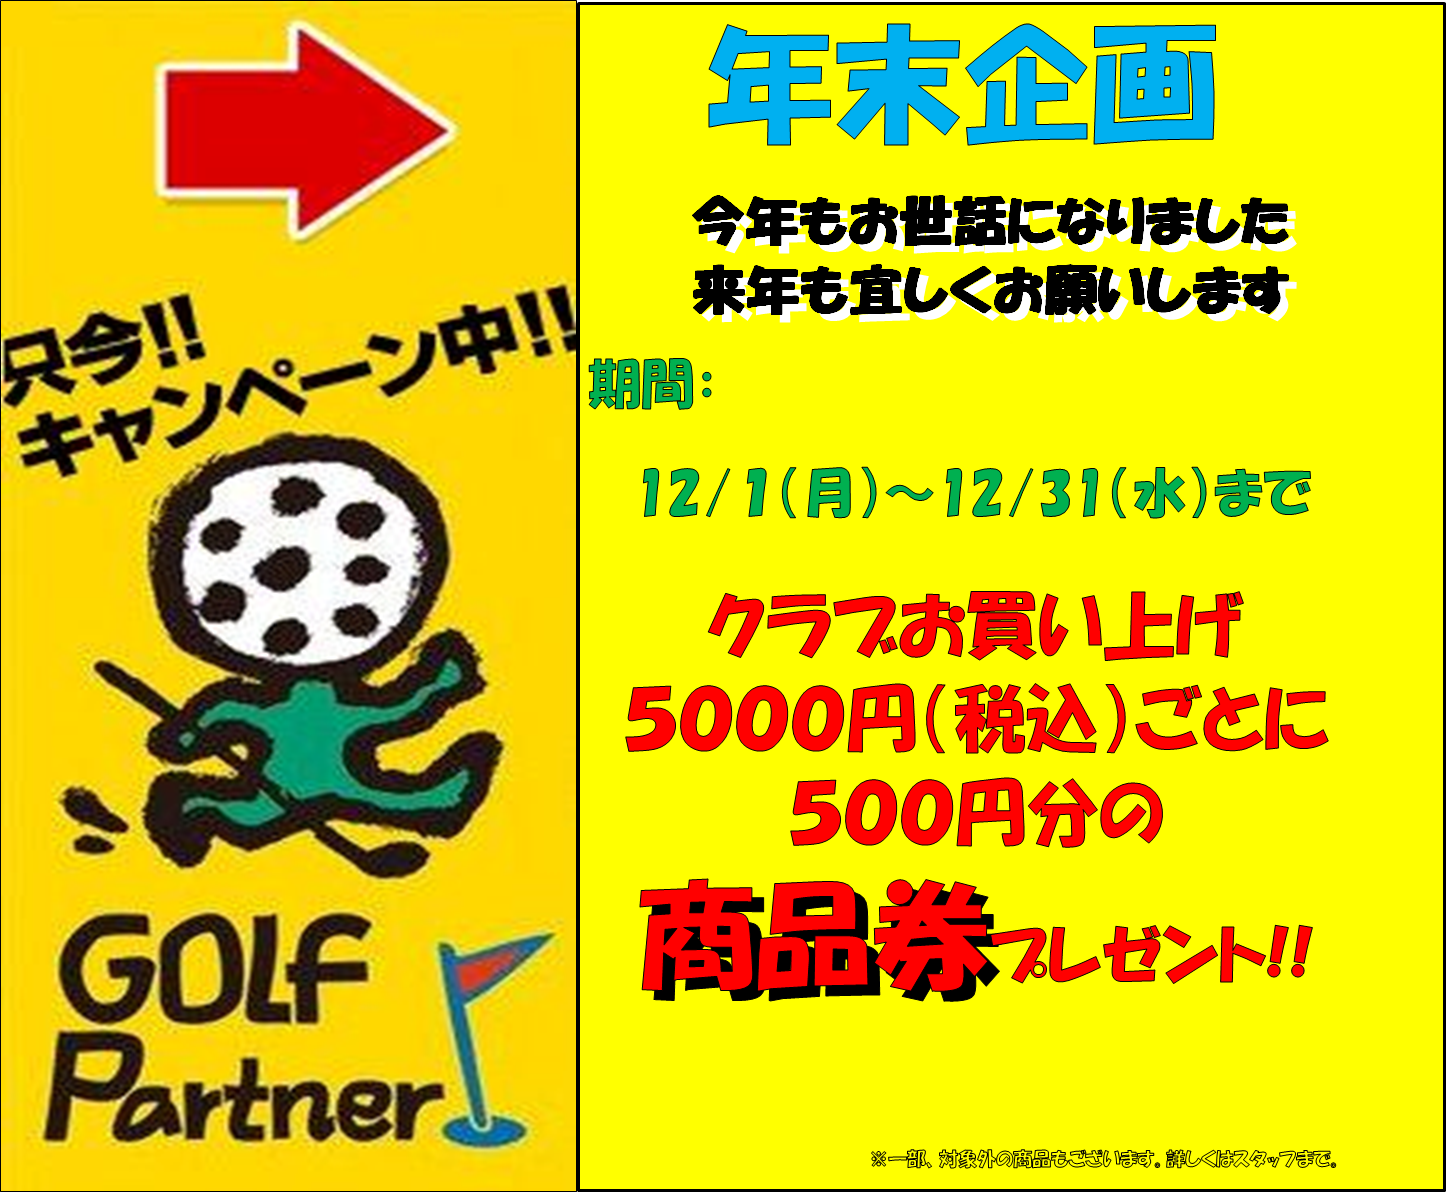 http://www.golfpartner.co.jp/558/H261201.bmp